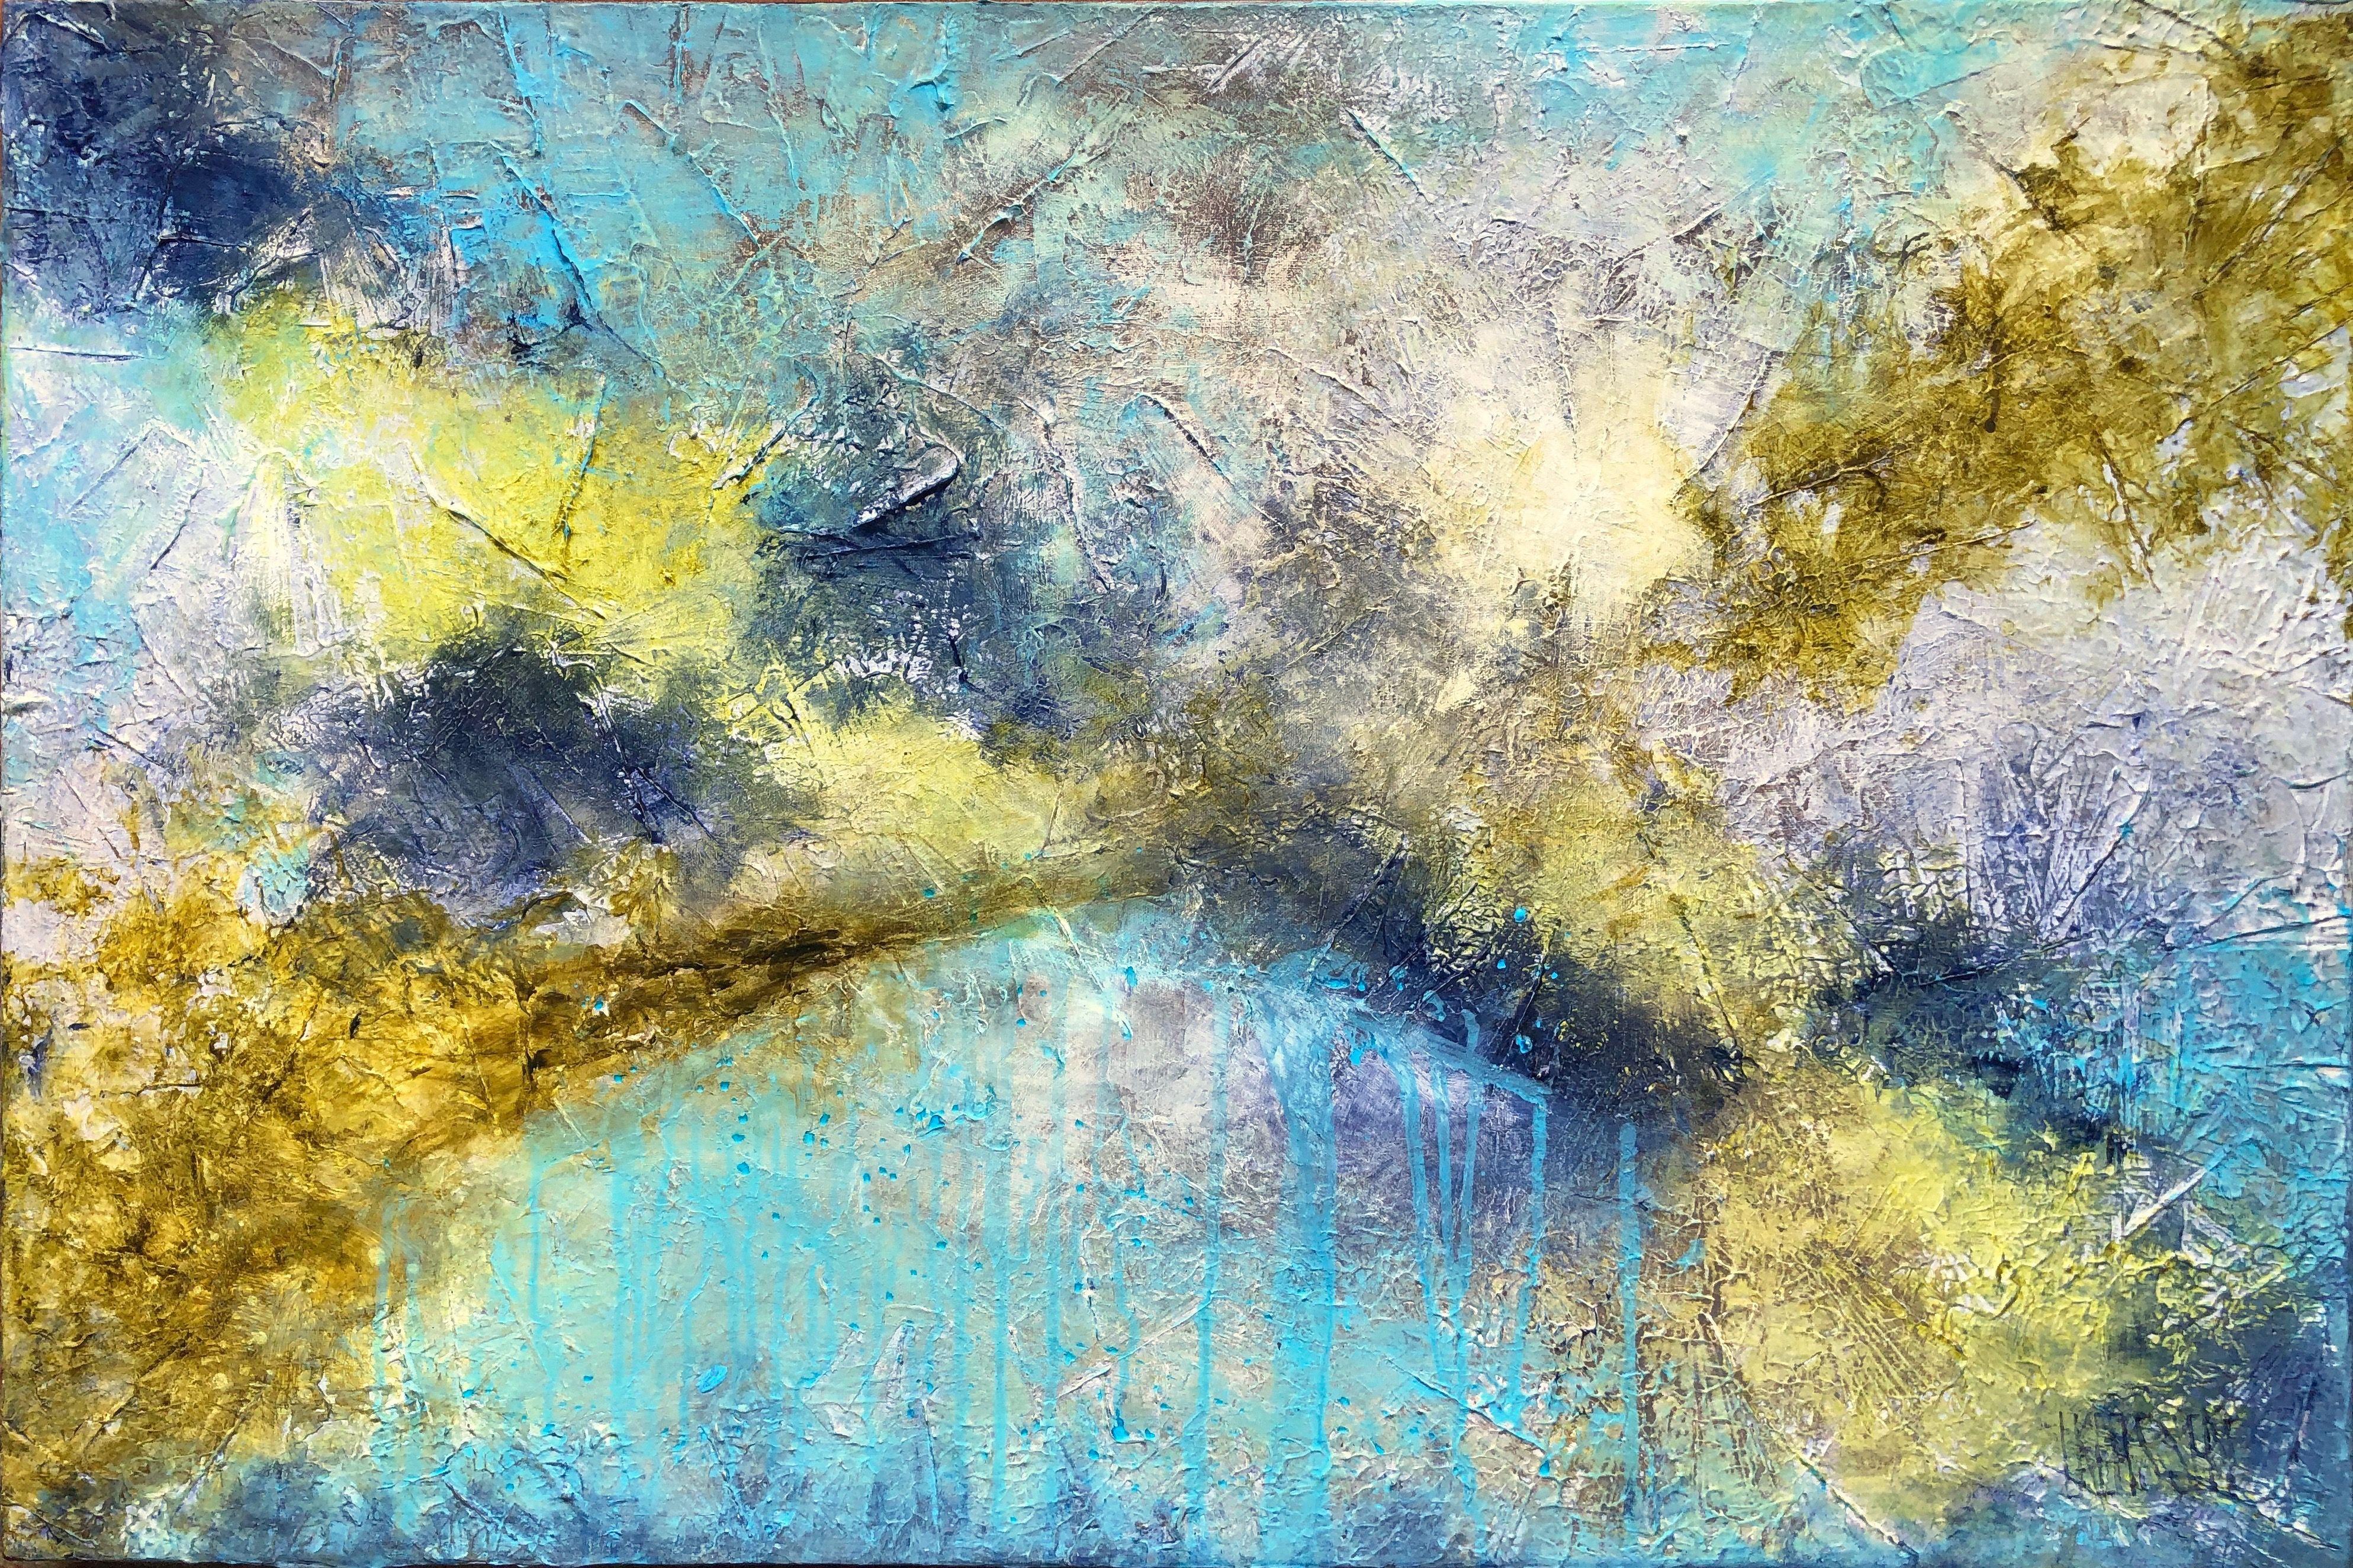 Mount Baker, Mixed Media on Canvas - Mixed Media Art by Lianna Klassen